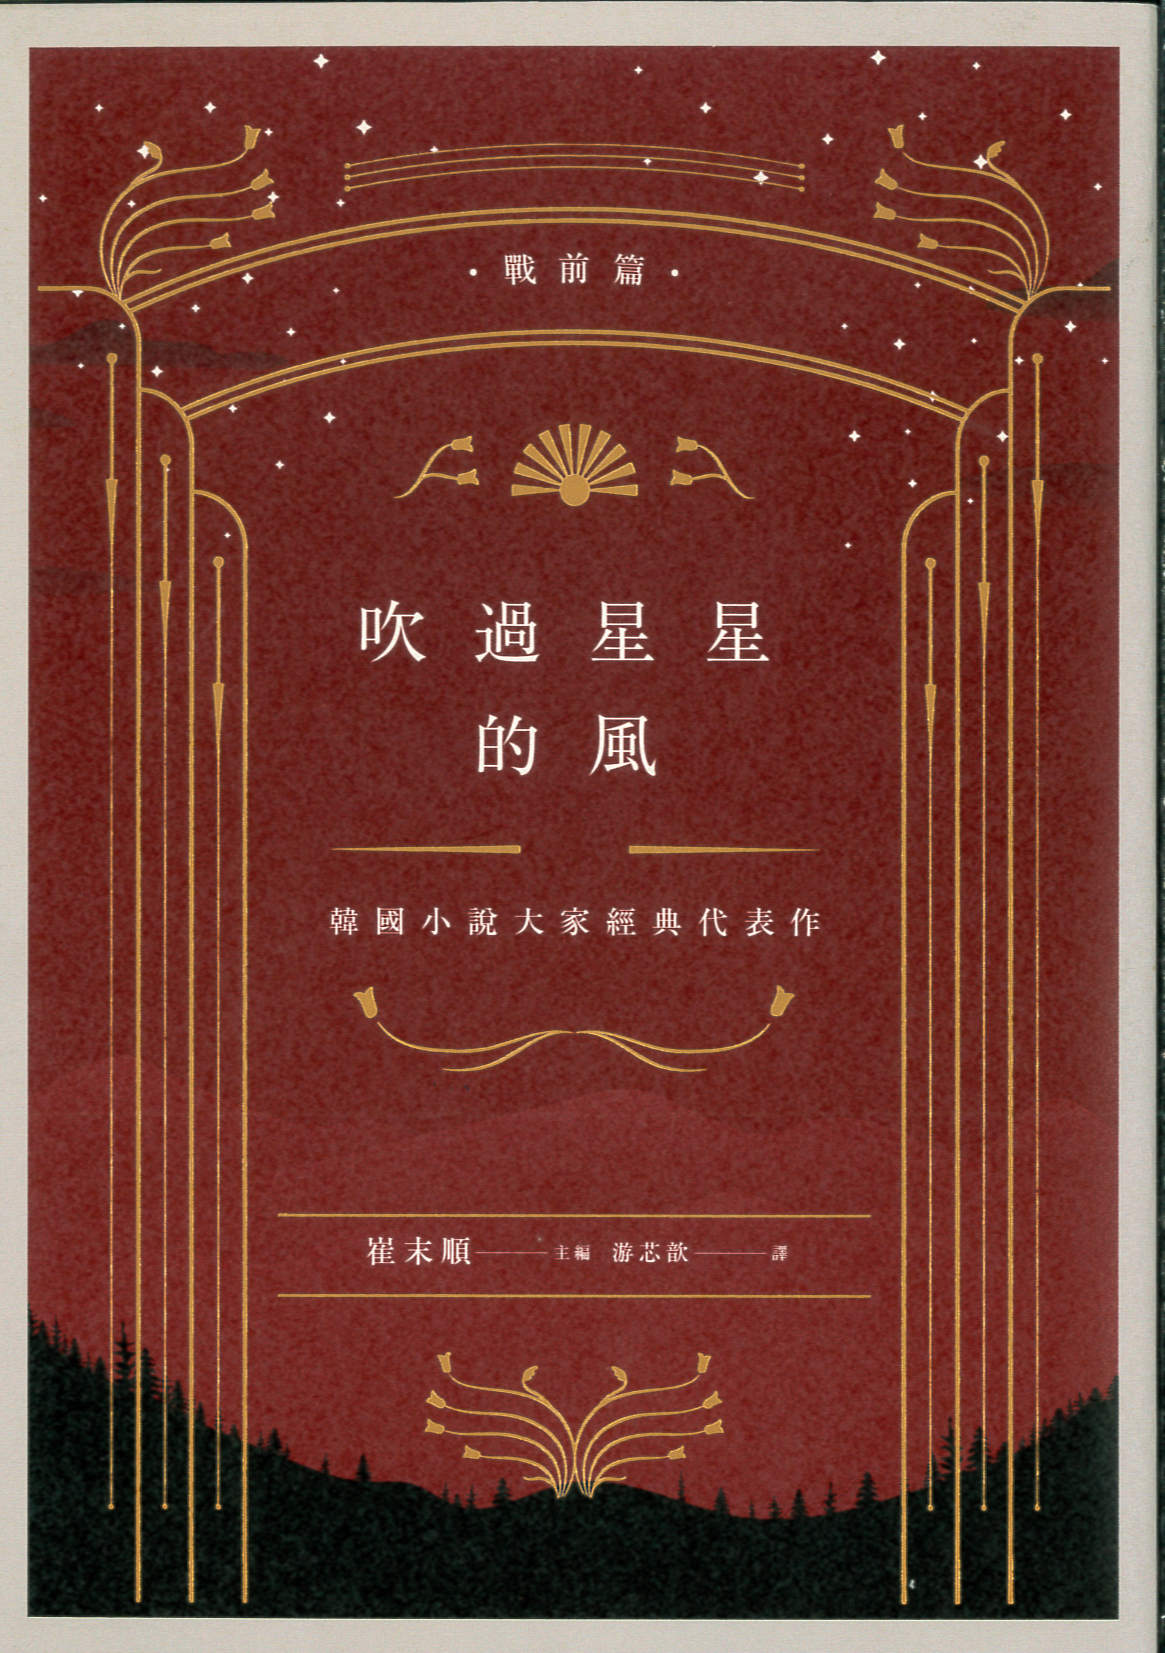 吹過星星的風 : 韓國小說大家經典代表作. 戰前篇